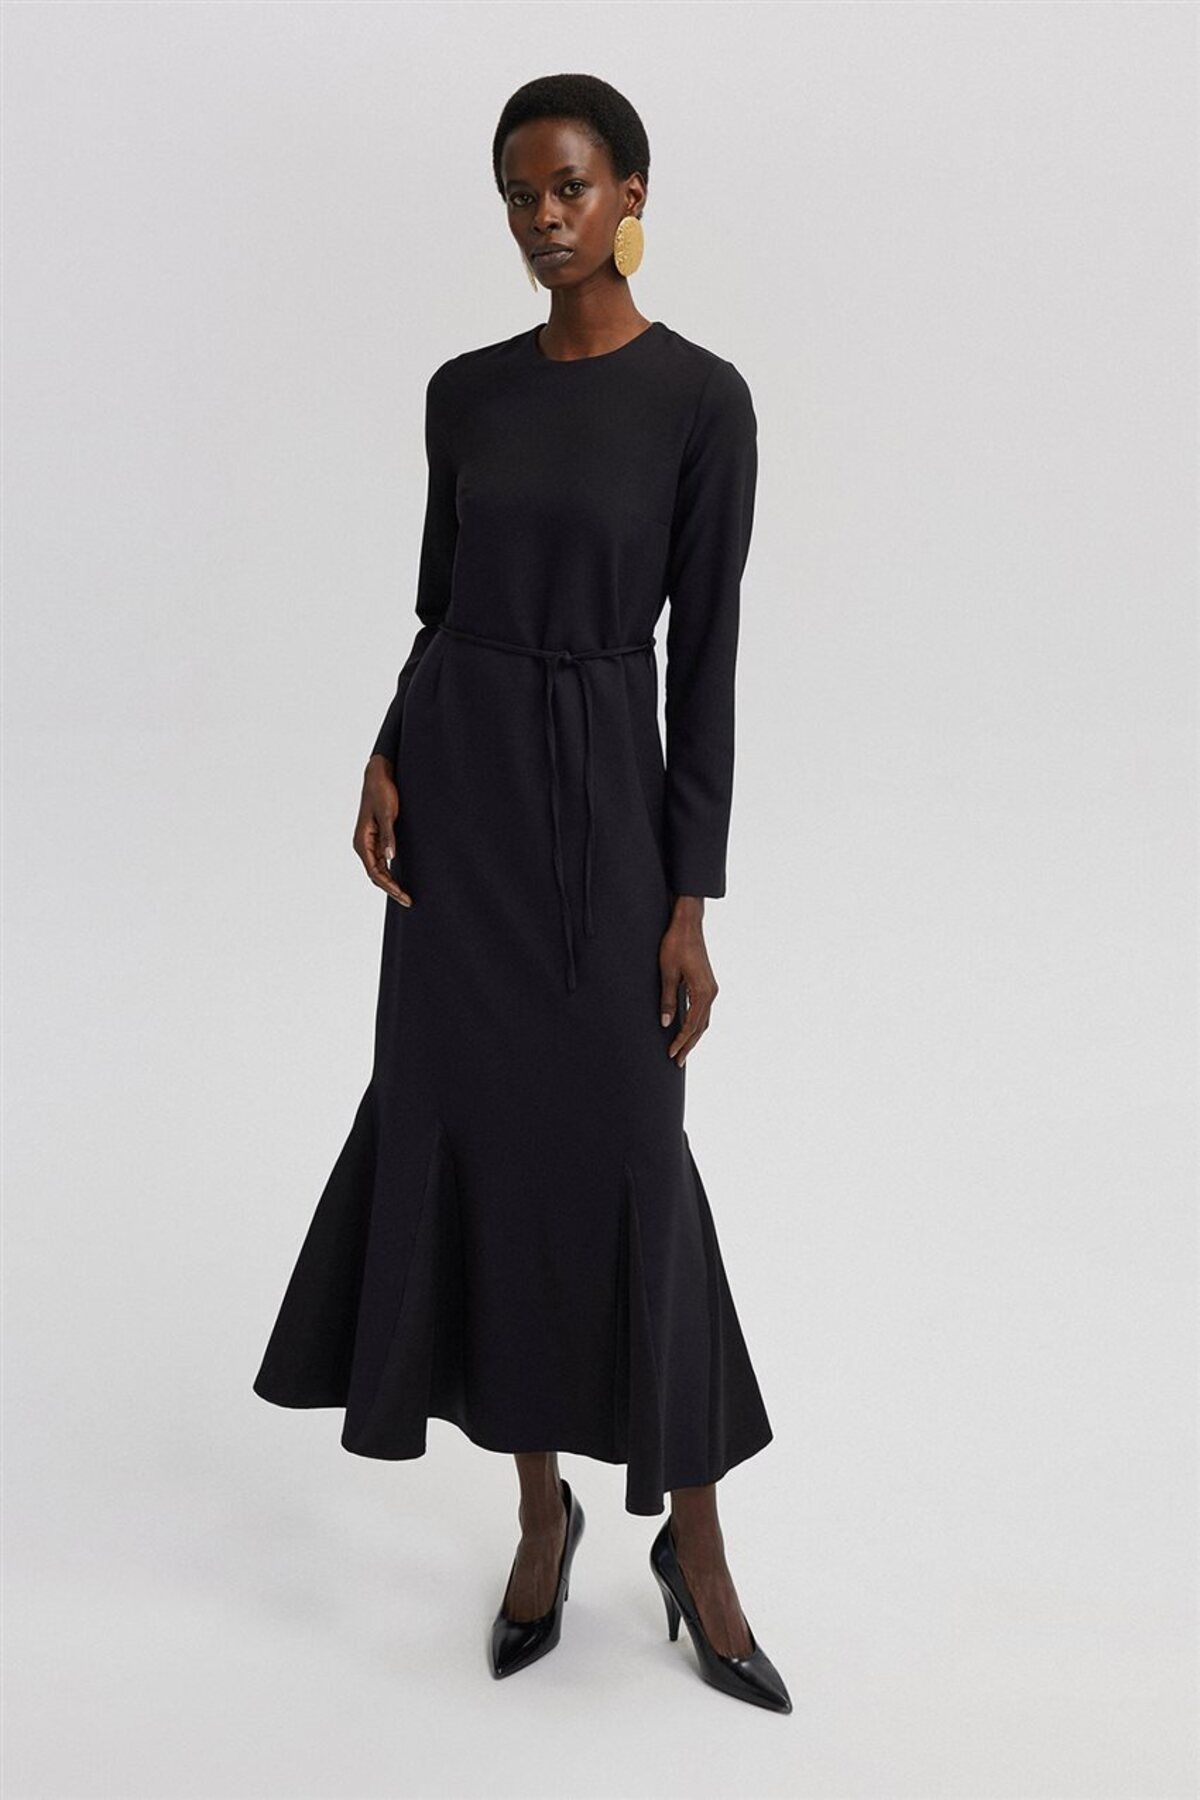 TOUCHE Saten Detaylı Krep Elbise-Siyah 24S1T0004-101